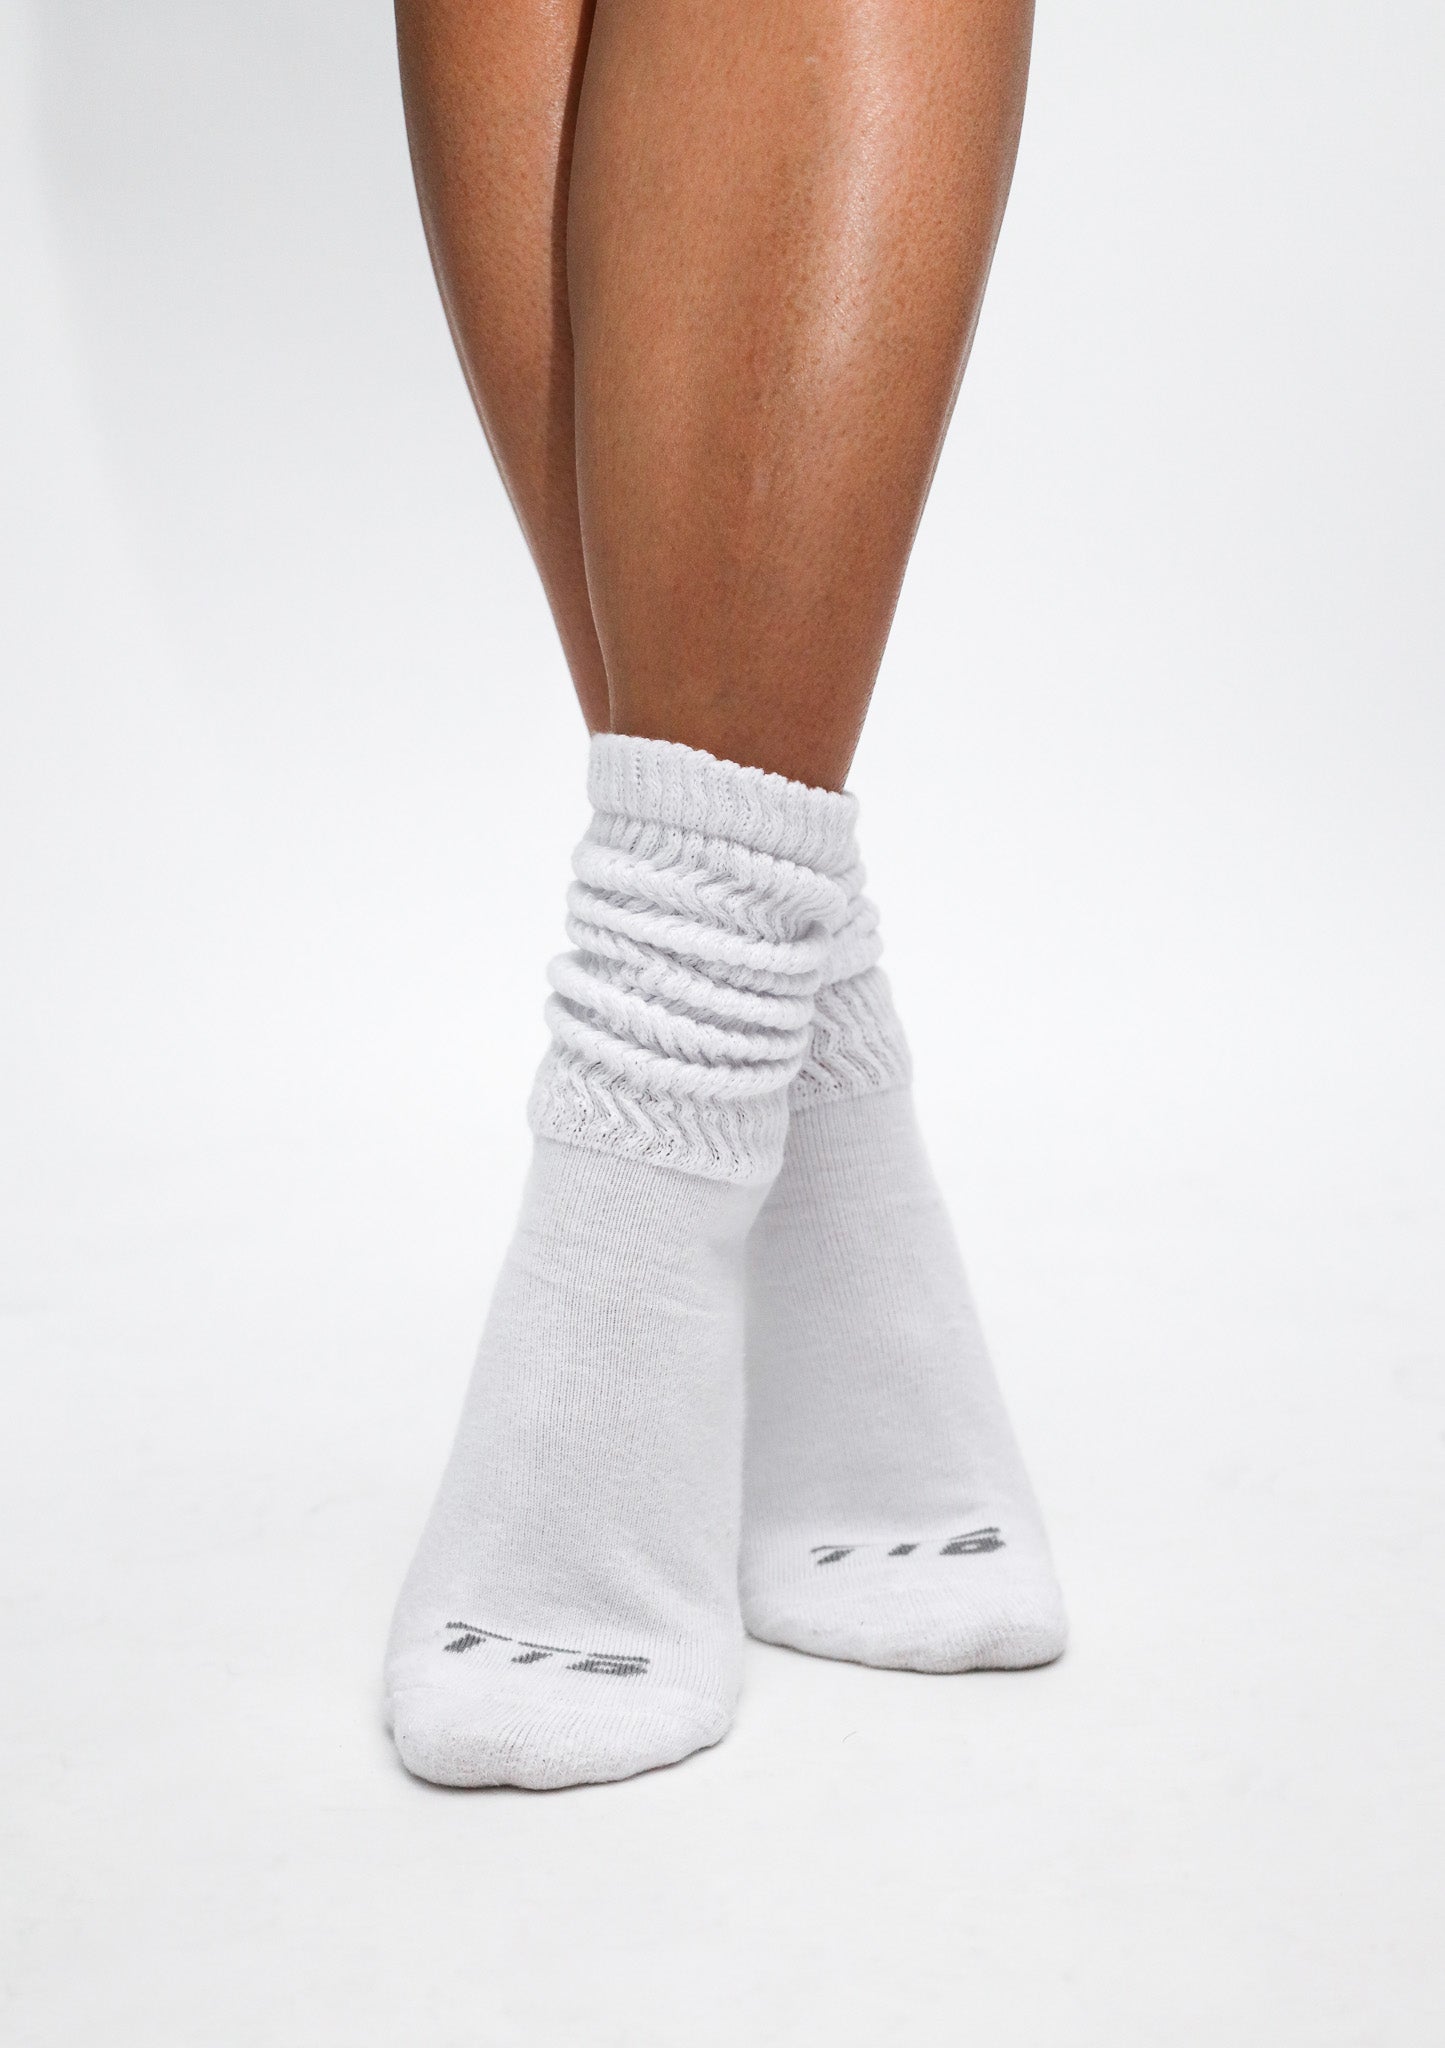 Slouch Socks - Ultra-Comfortable Socks